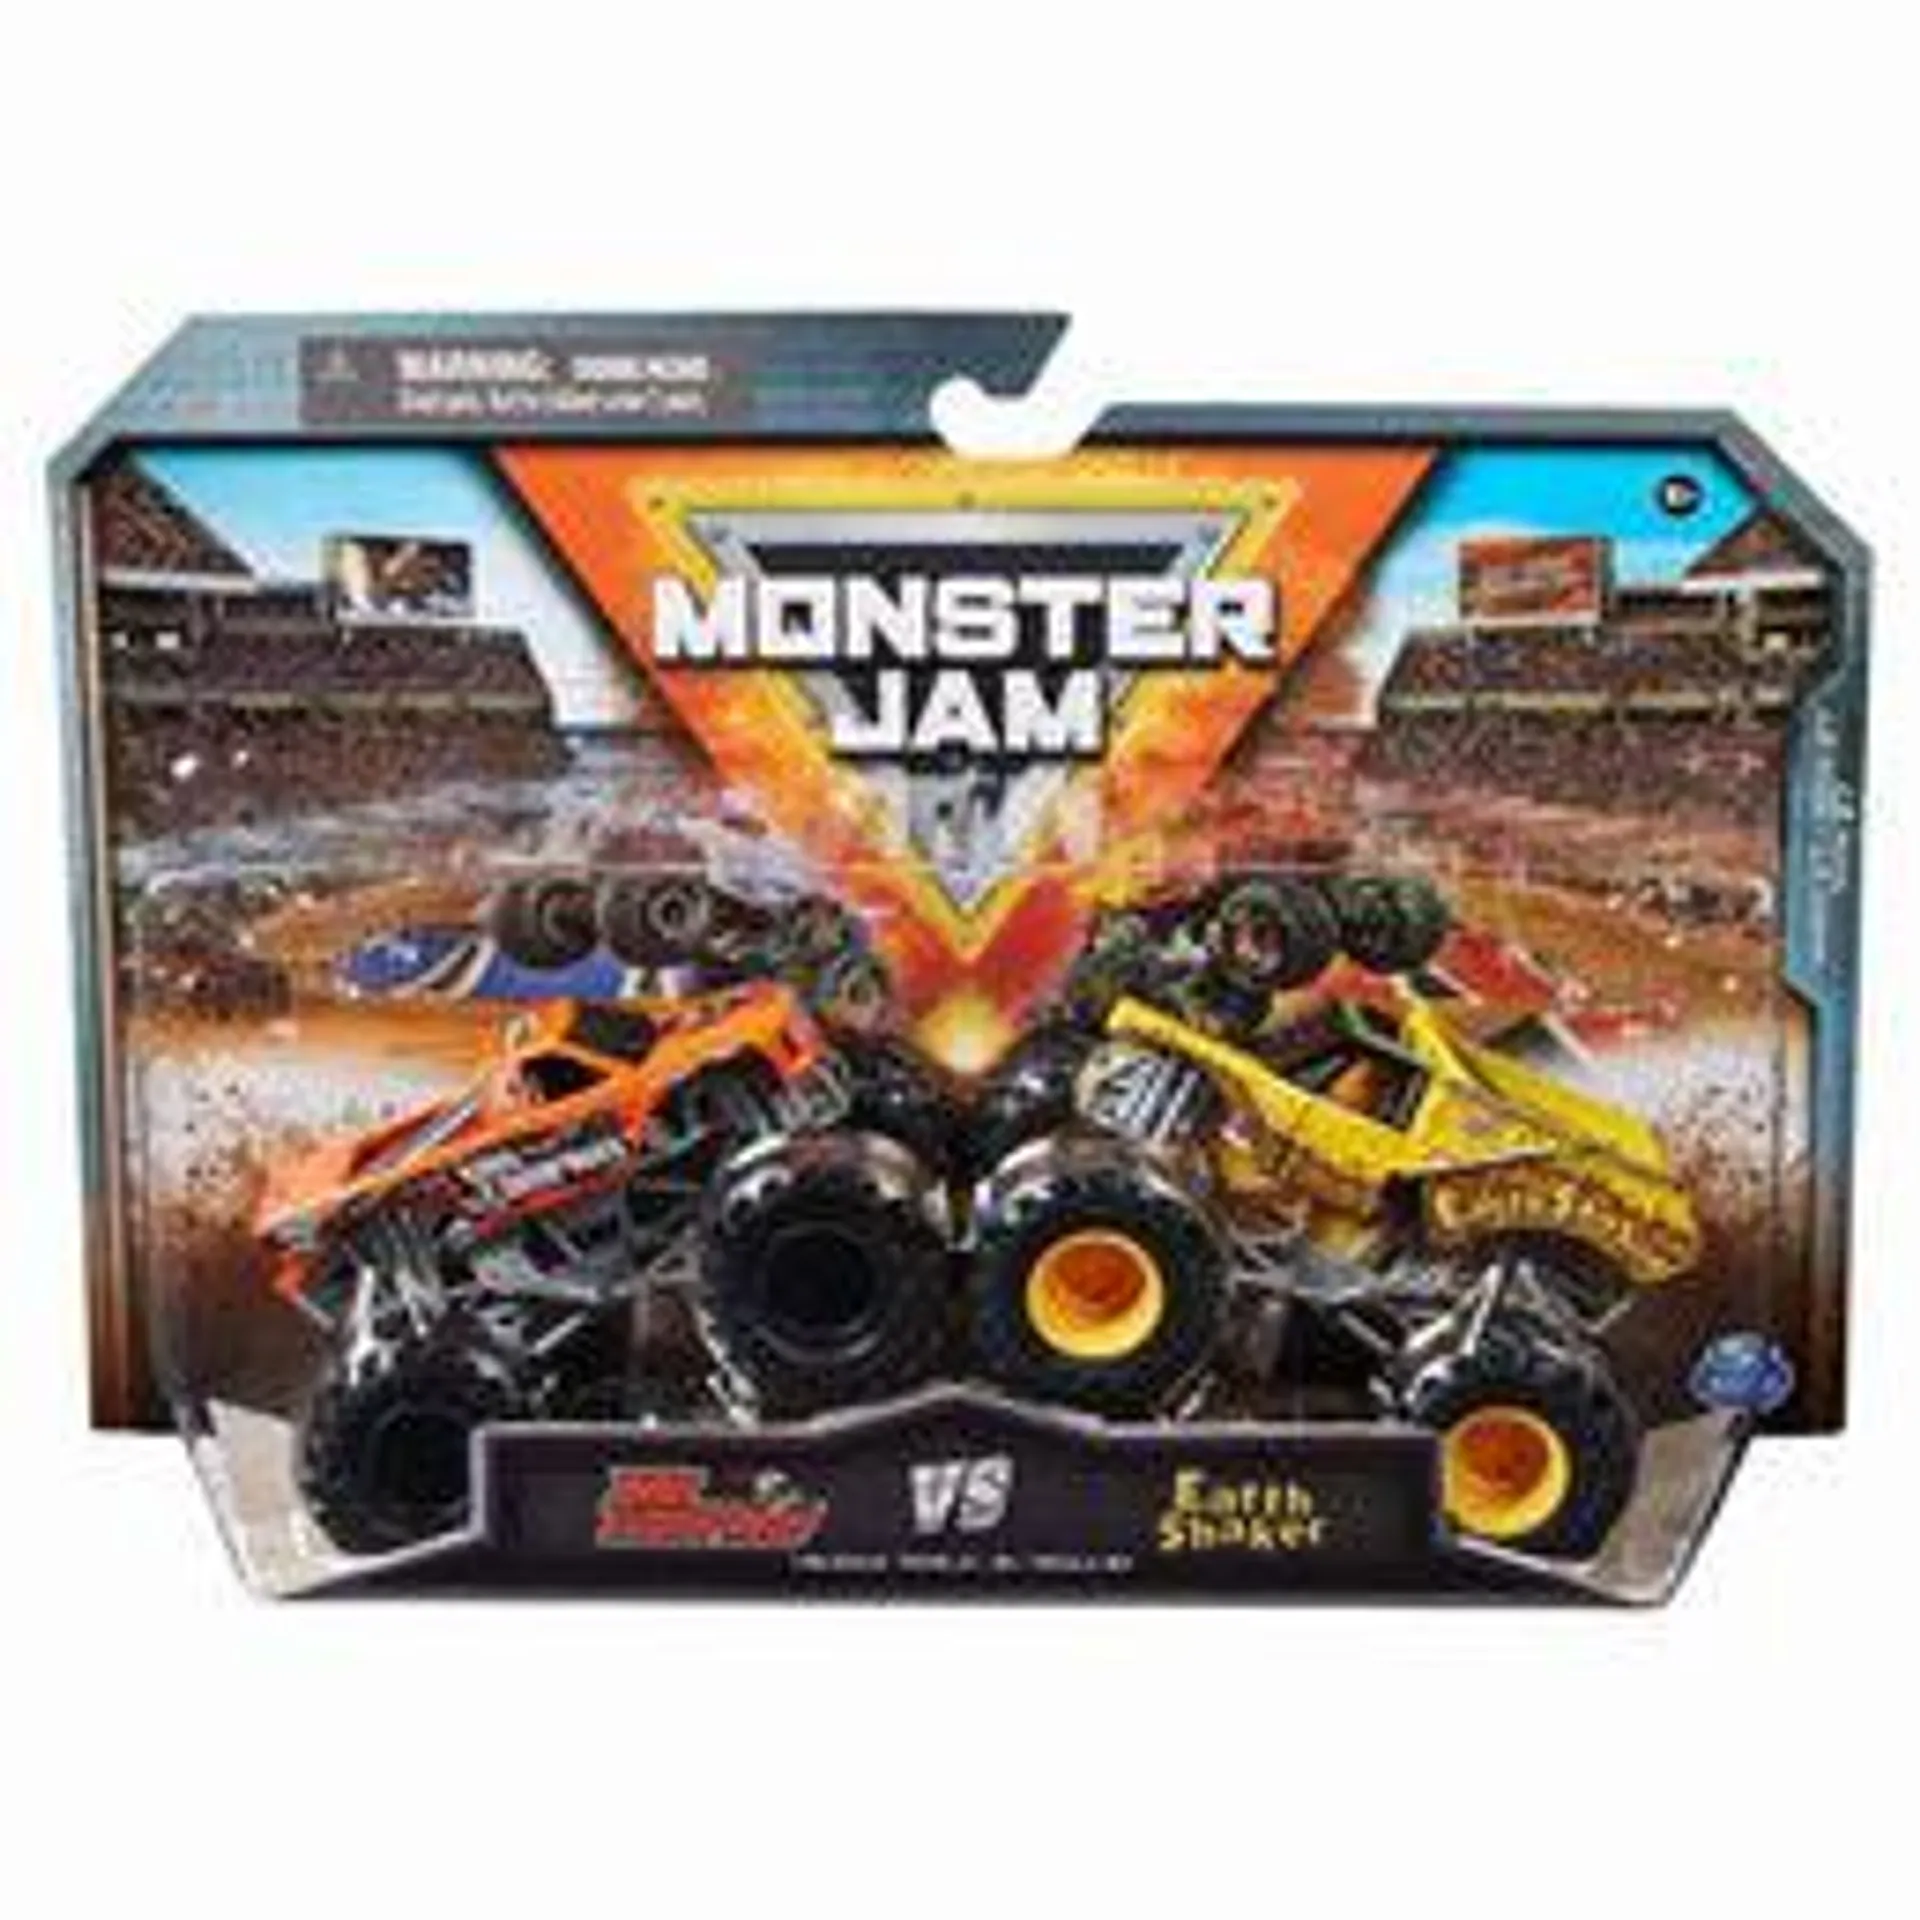 Monster Jam 1/64 Bad Company Vs Earth Shaker